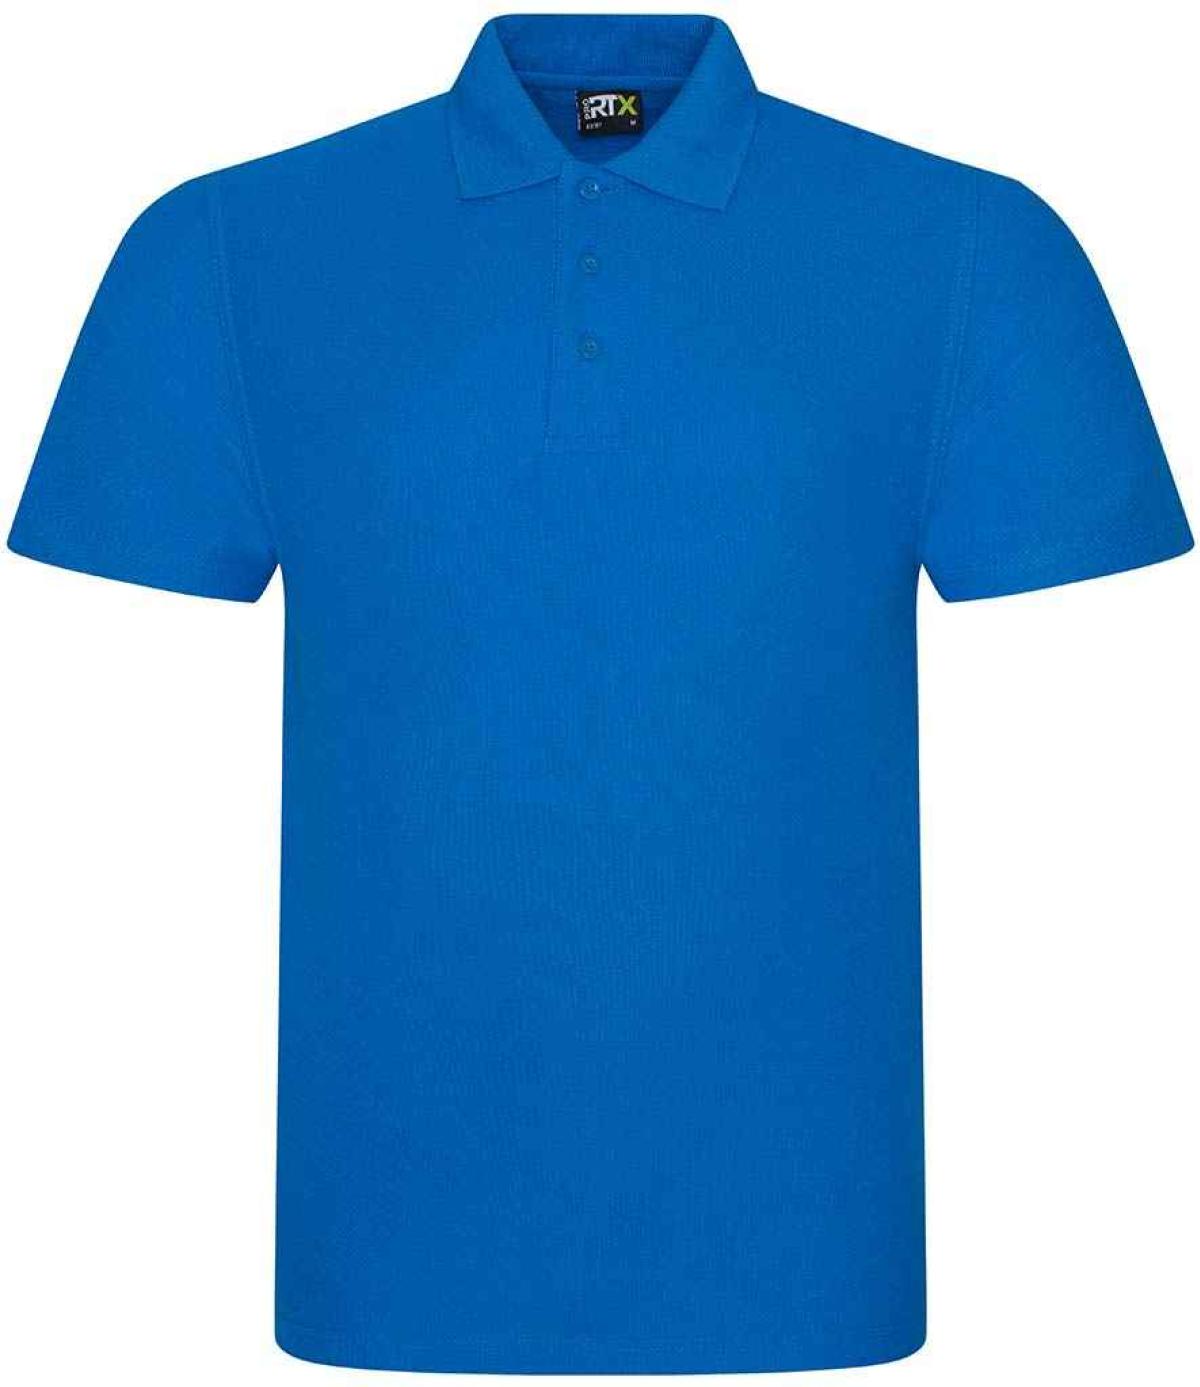 Pro RTX Pro Piqué Polo Shirt - Sapphire Blue | Order Uniform UK Ltd